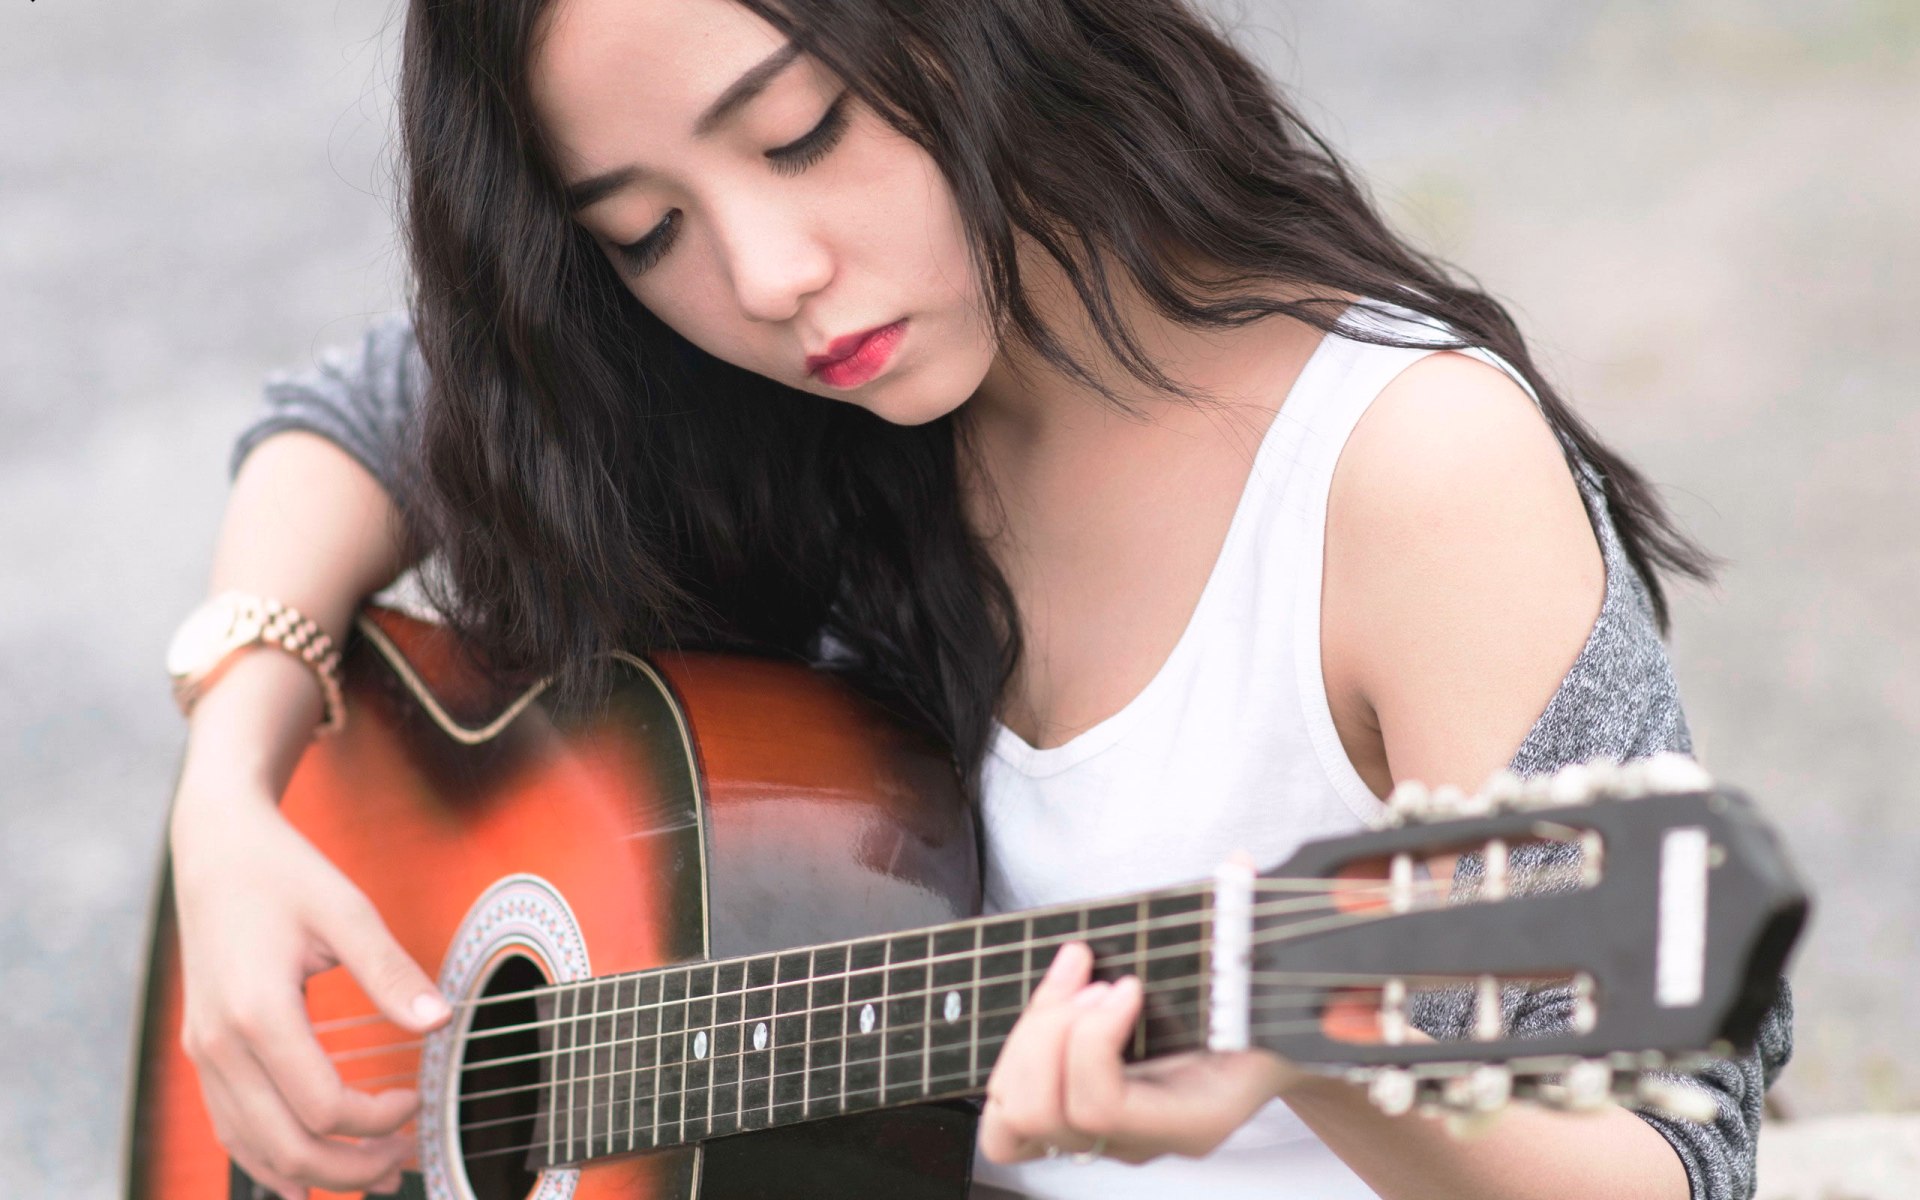 Обнаженная азиаточка с гитарой (фото)